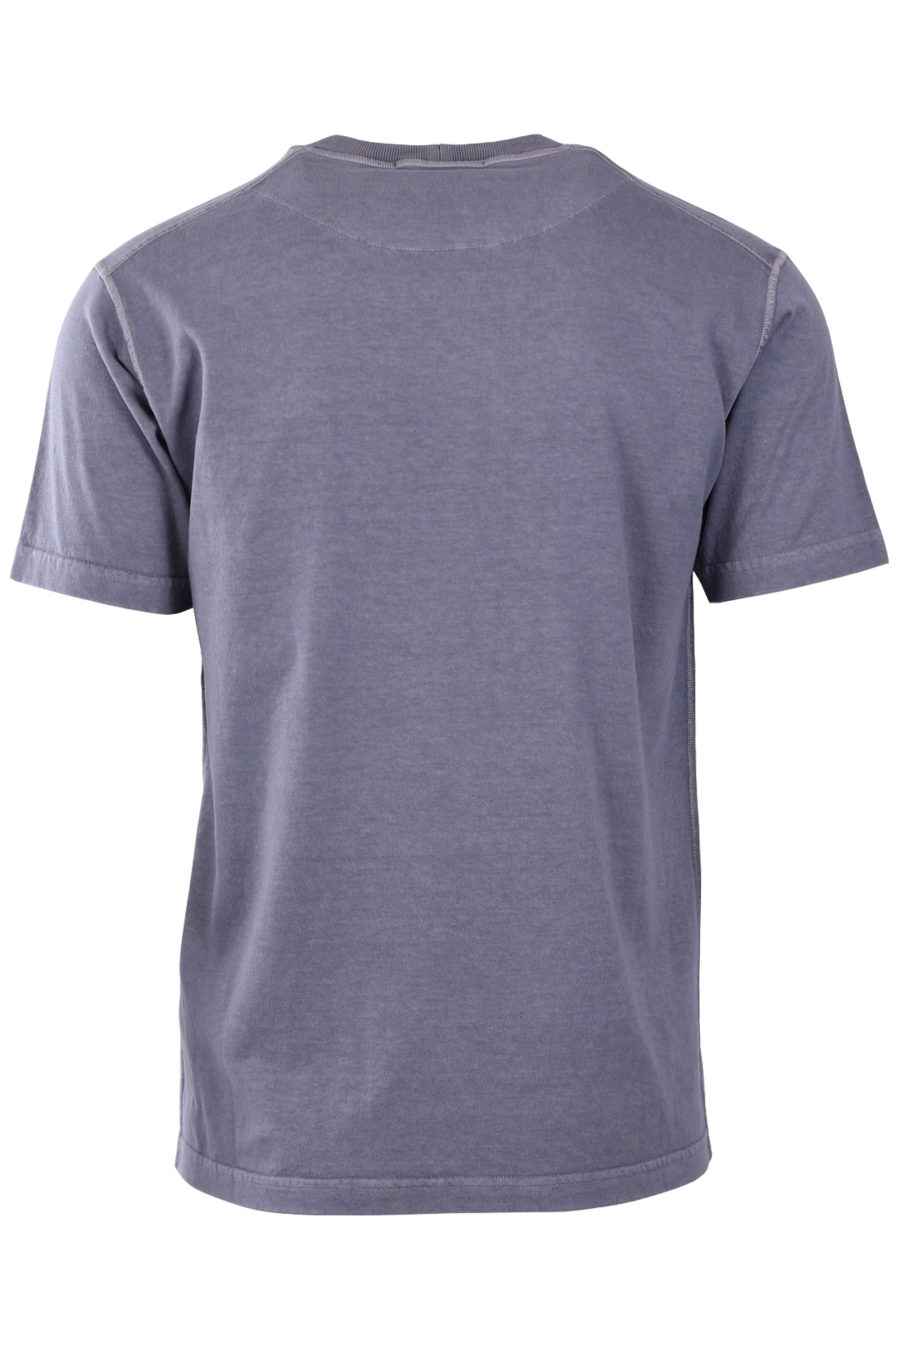 Camiseta gris con parche de la marca - 86a1776f23262f8fe8c4a4d01db7d4c2ec3db86a